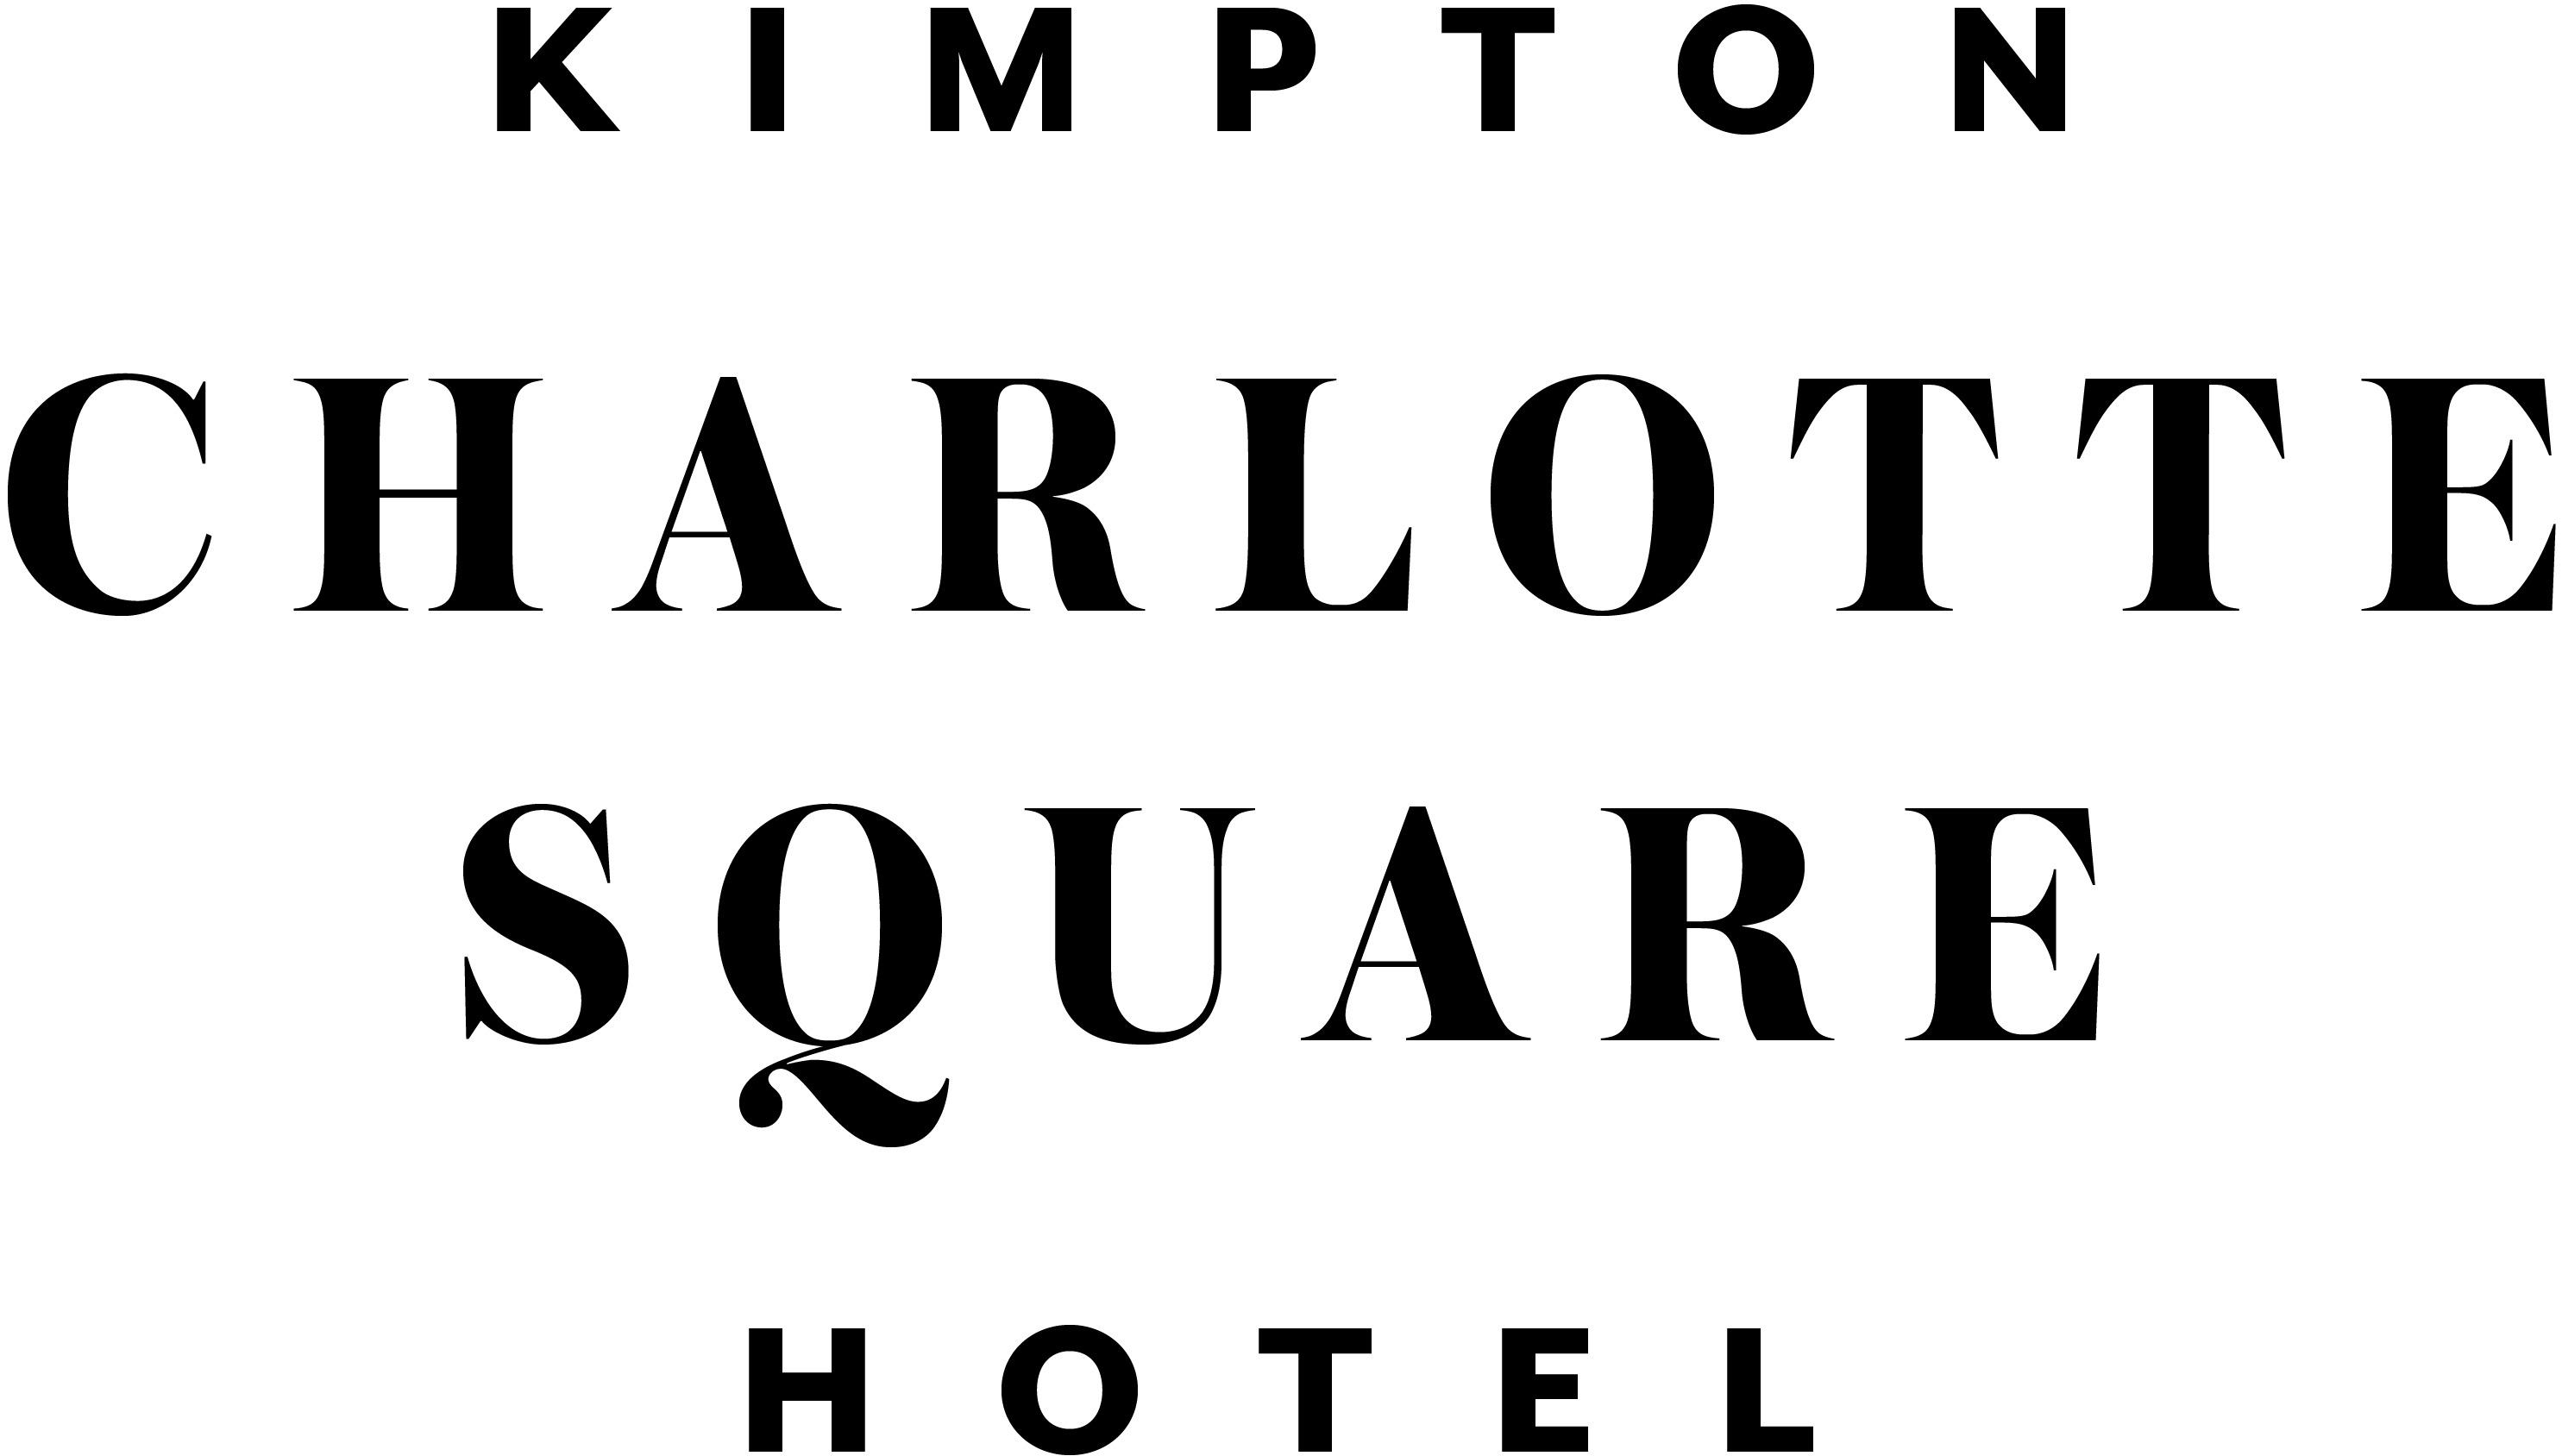 Kimpton Charlotte Square Hotel, The Cellar photo #1